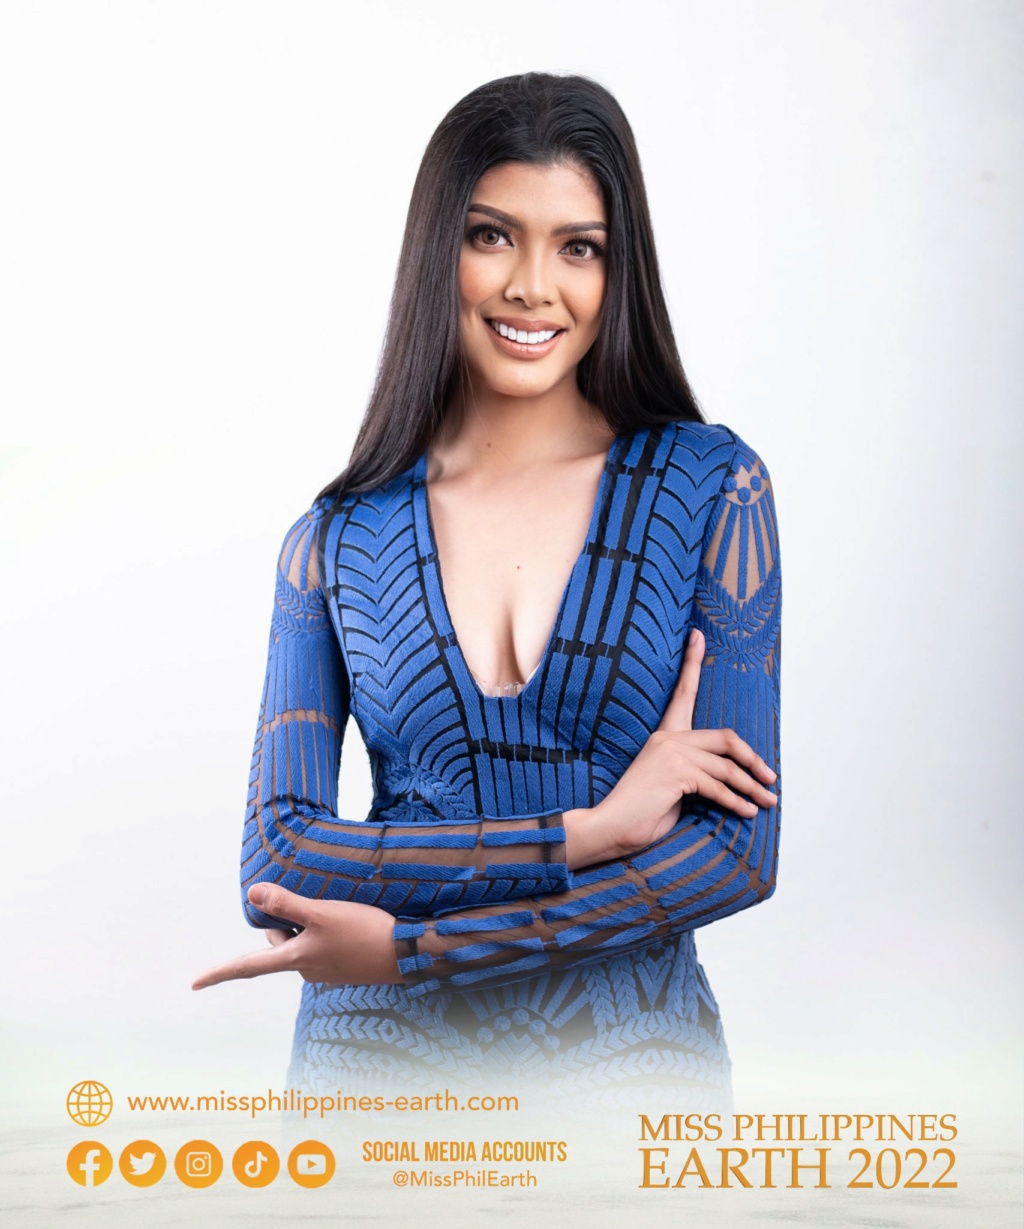 Miss Philippines Earth 2022 is Jenny Ramp from Santa Ignacia, Tarlac 28161110